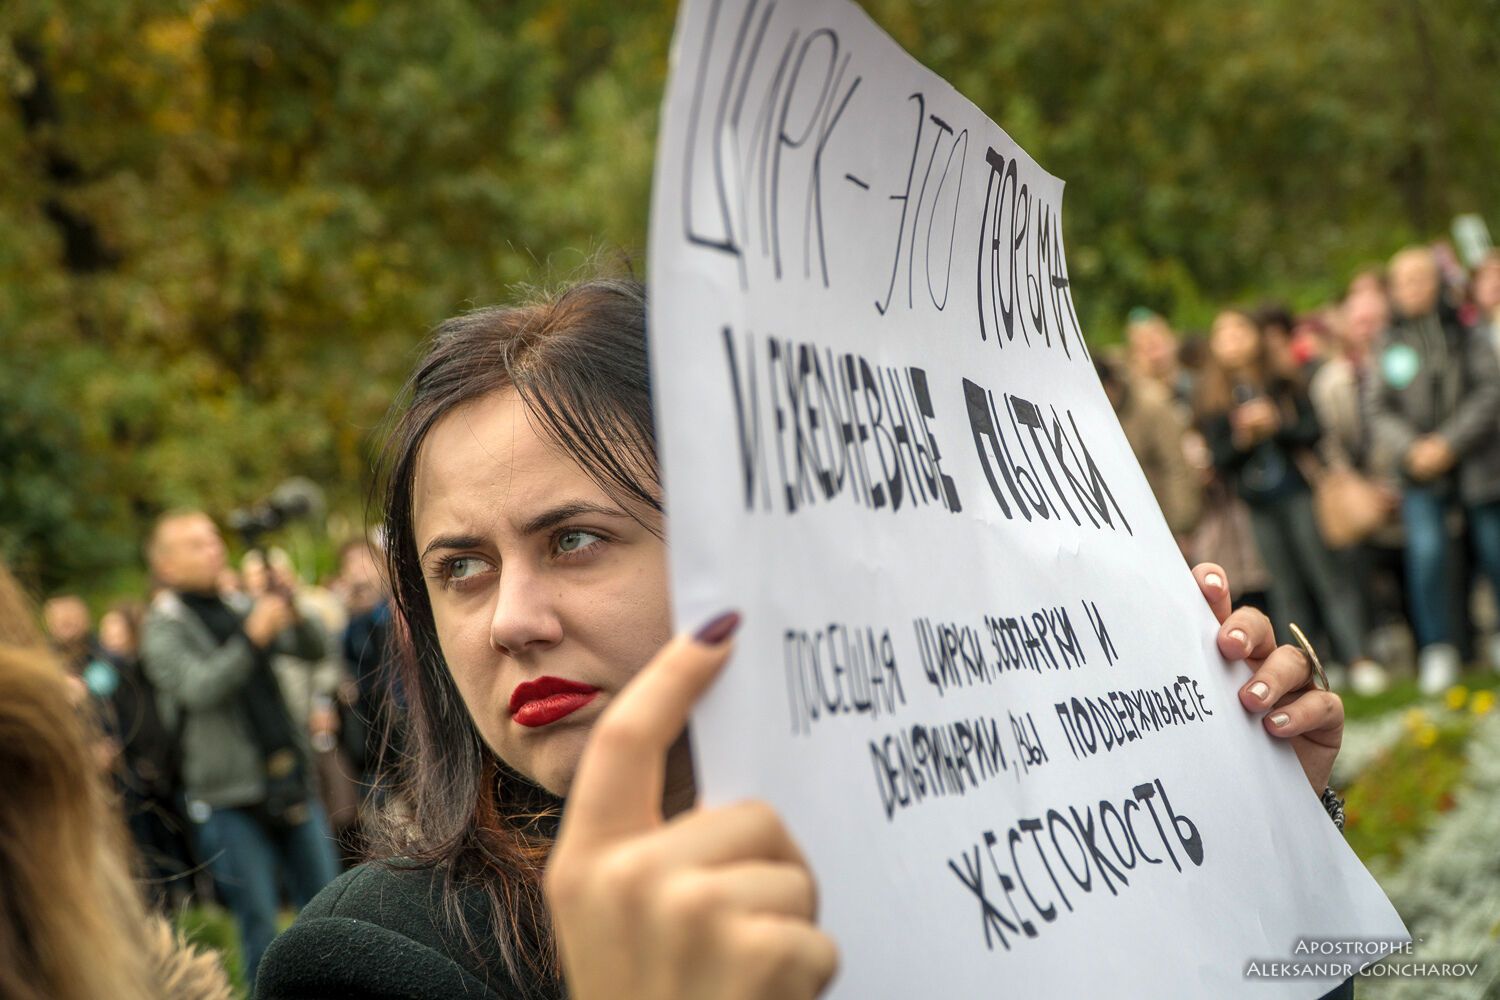 "Меня убили твои развлечения": в Киеве прошел нашумевший Марш за права животных